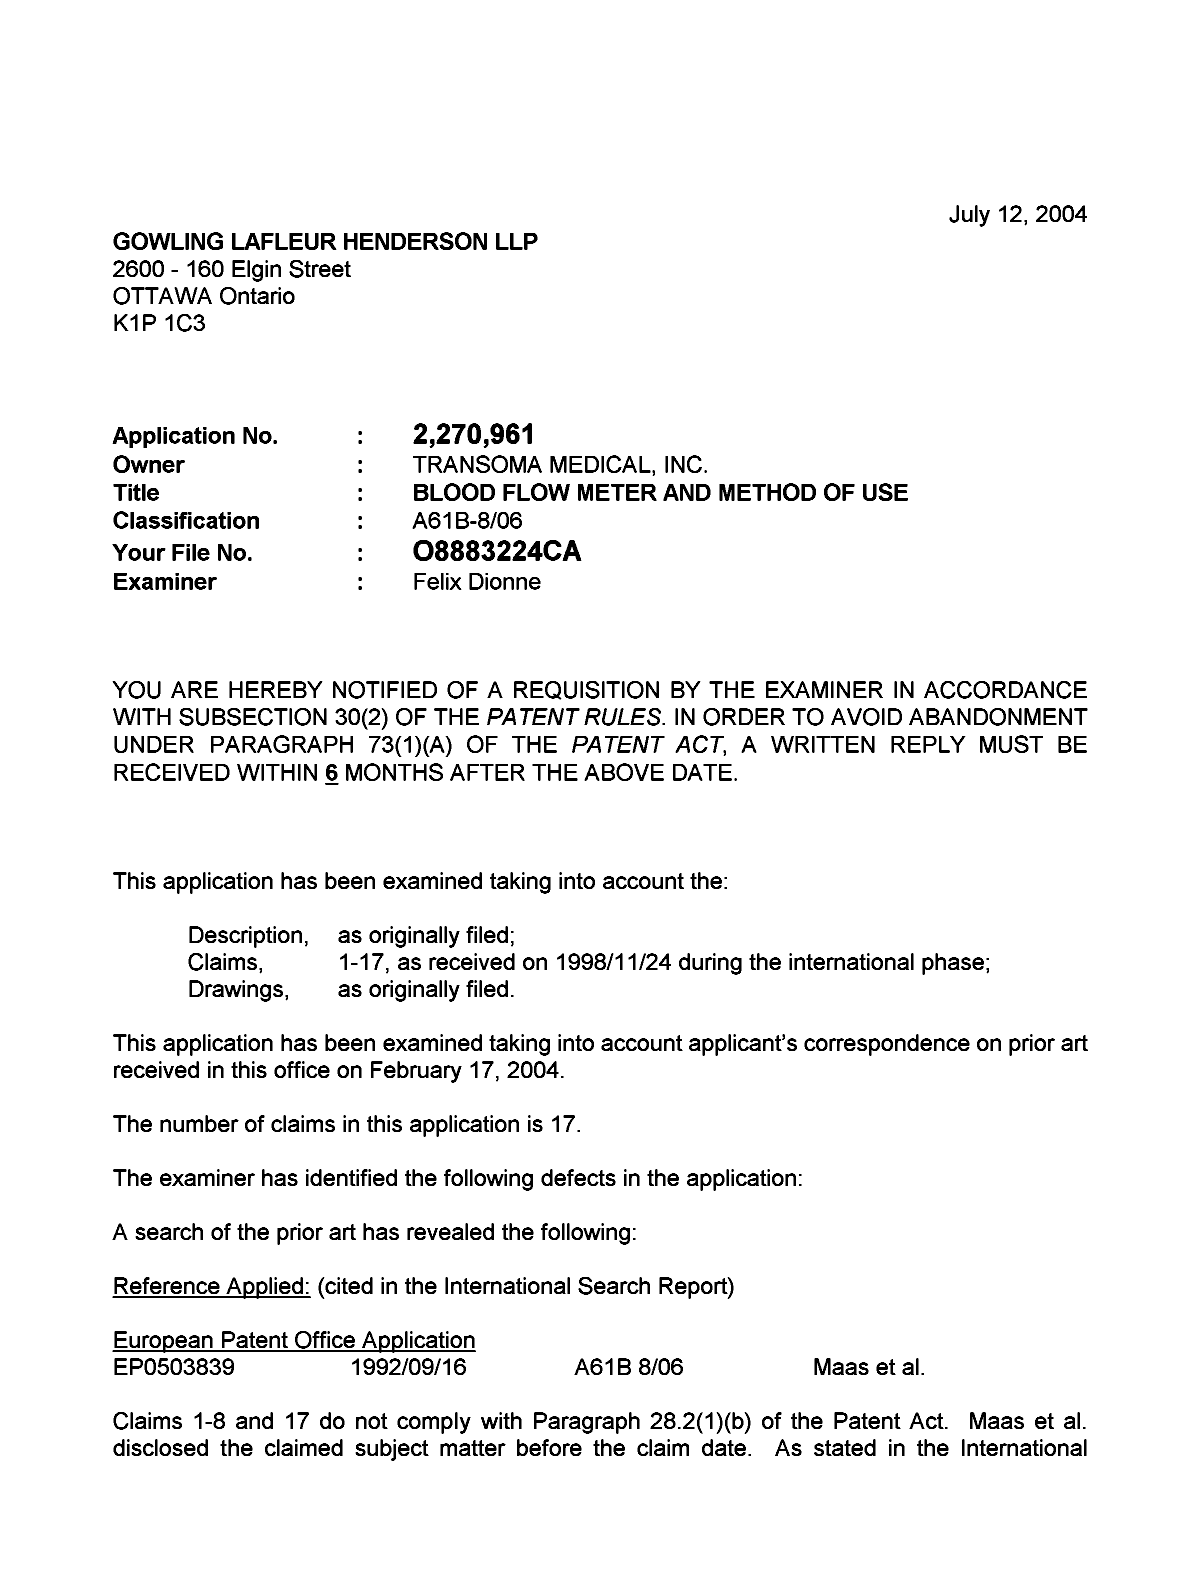 Document de brevet canadien 2270961. Poursuite-Amendment 20040712. Image 1 de 3